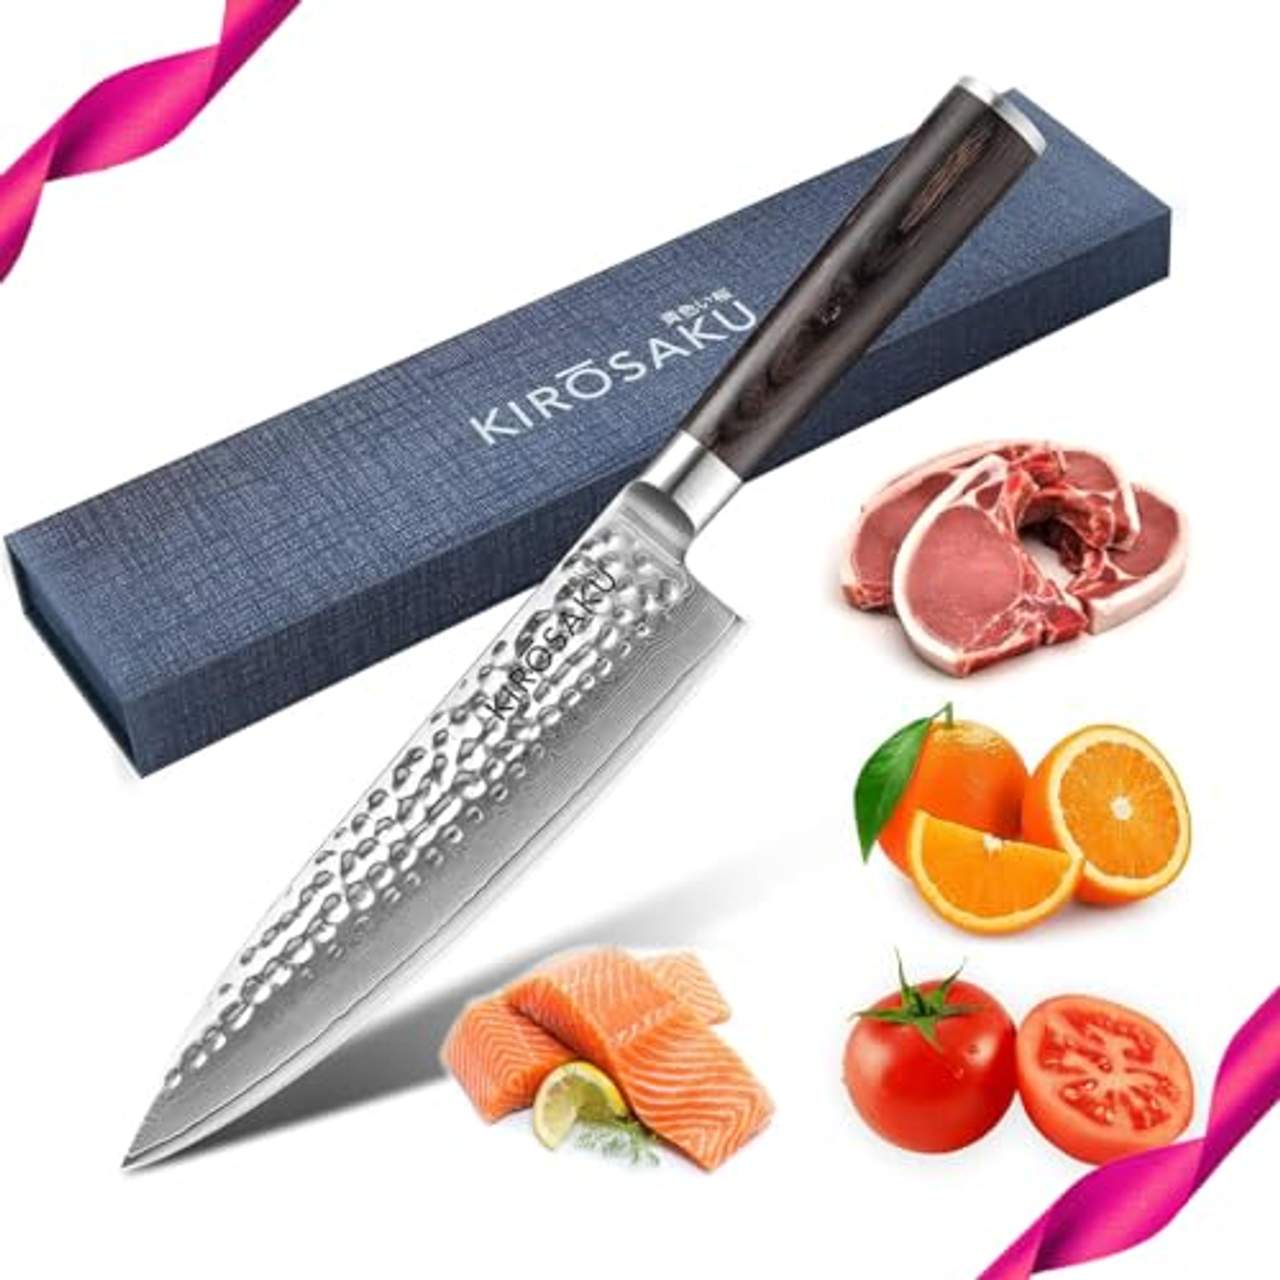 Kirosaku Premium japanisches Damast Küchenmesser 20cm